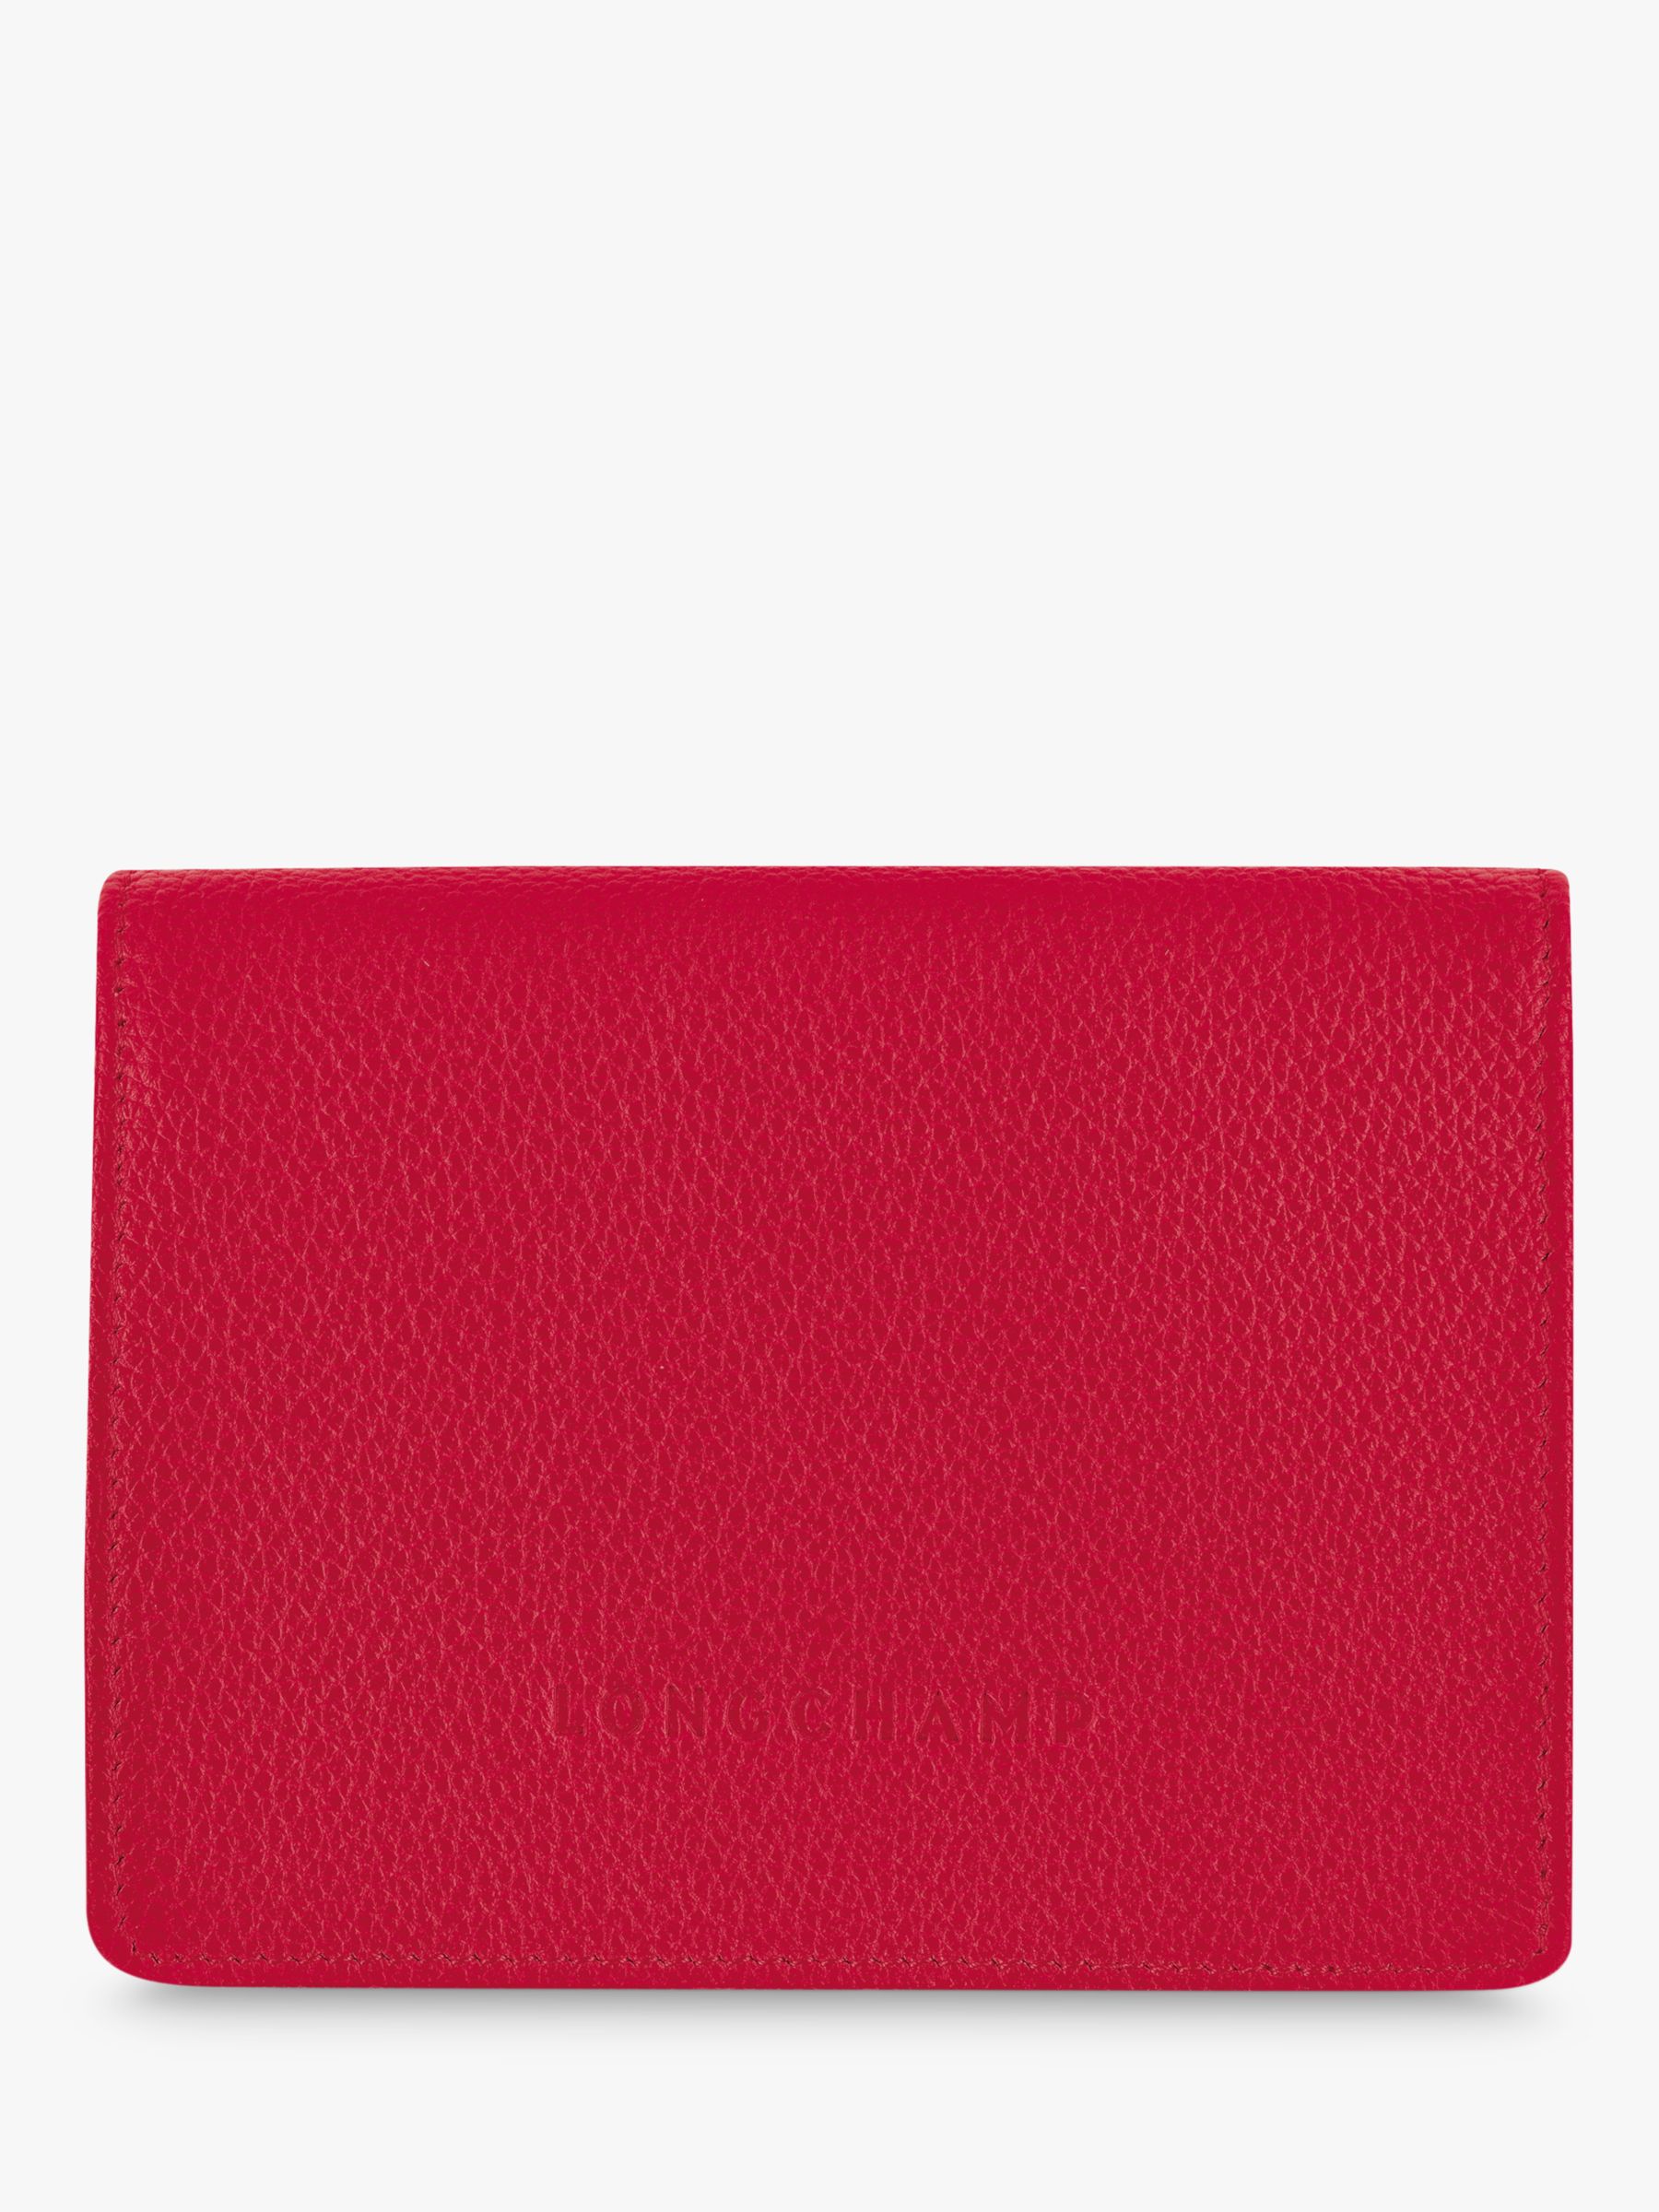 Longchamp Le Foulonné Compact Leather Wallet, Love at John Lewis & Partners